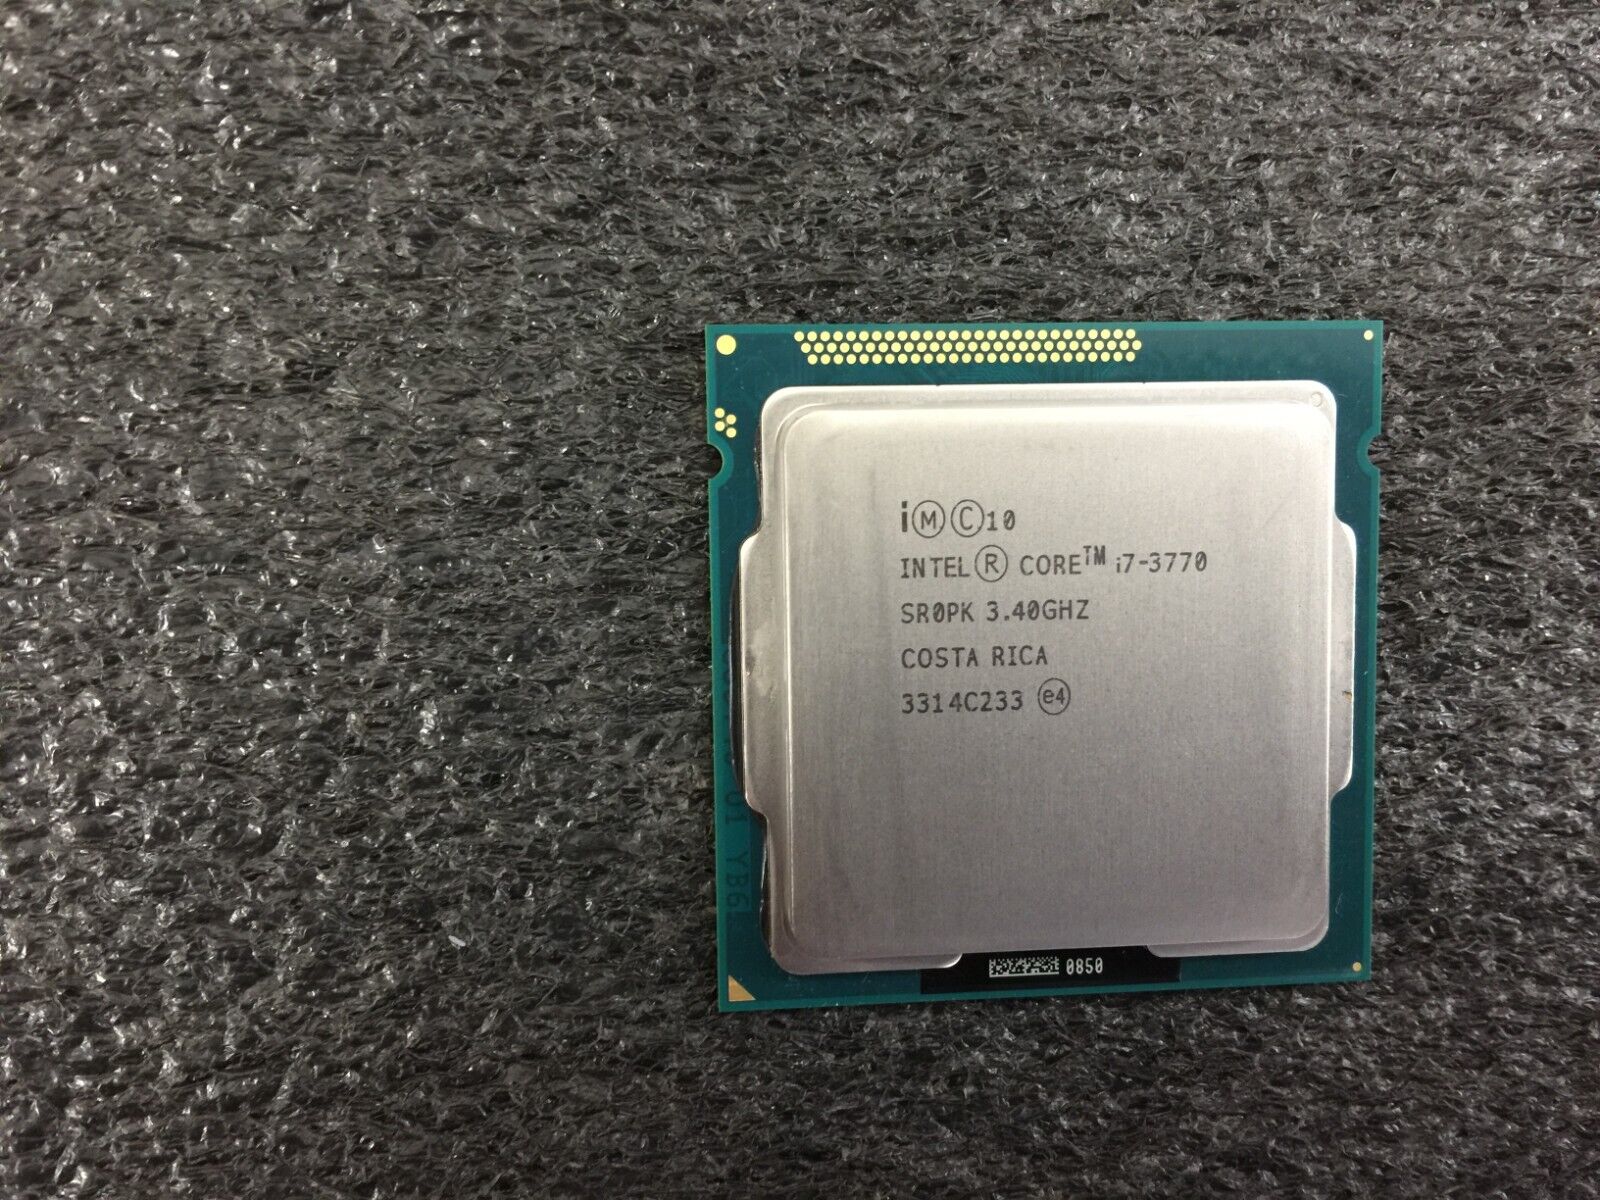 Intel Core i7-3770 3.4GHz Quad-Core CPU Processor SR0PK LGA1155 - CPU585